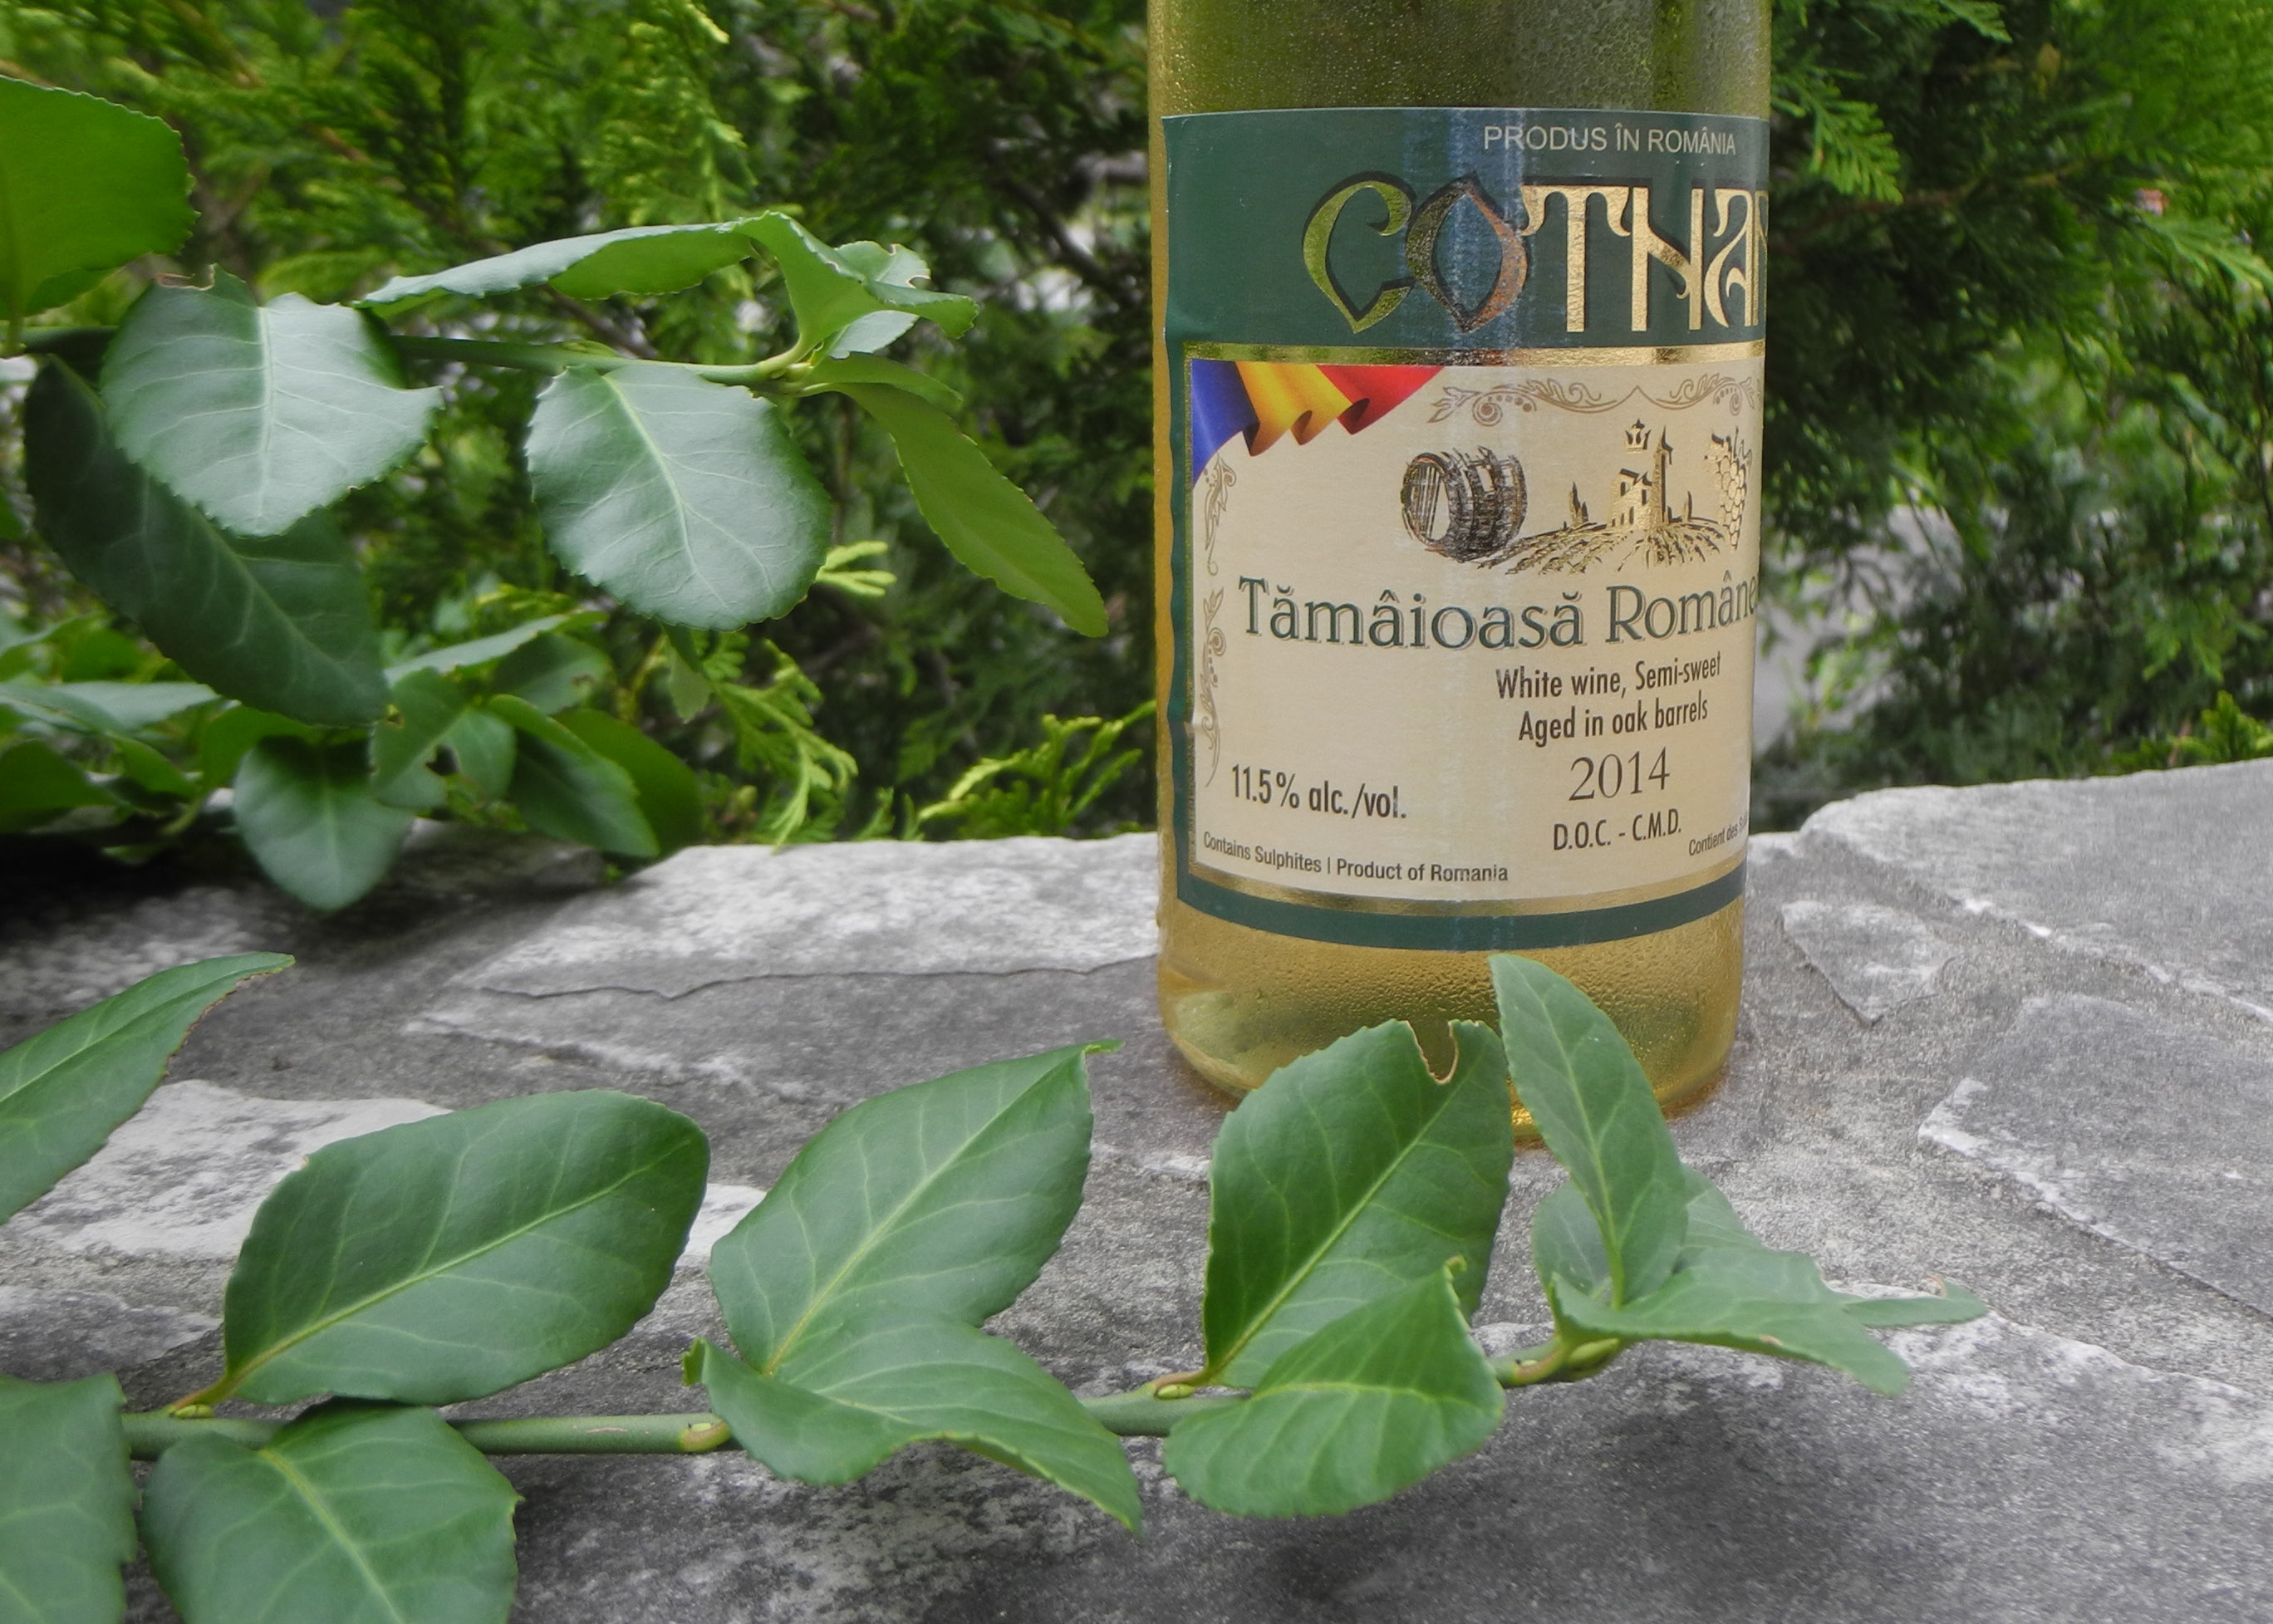 Roumanian wine - Tamaioasa Romaneasca Cotnari DOC